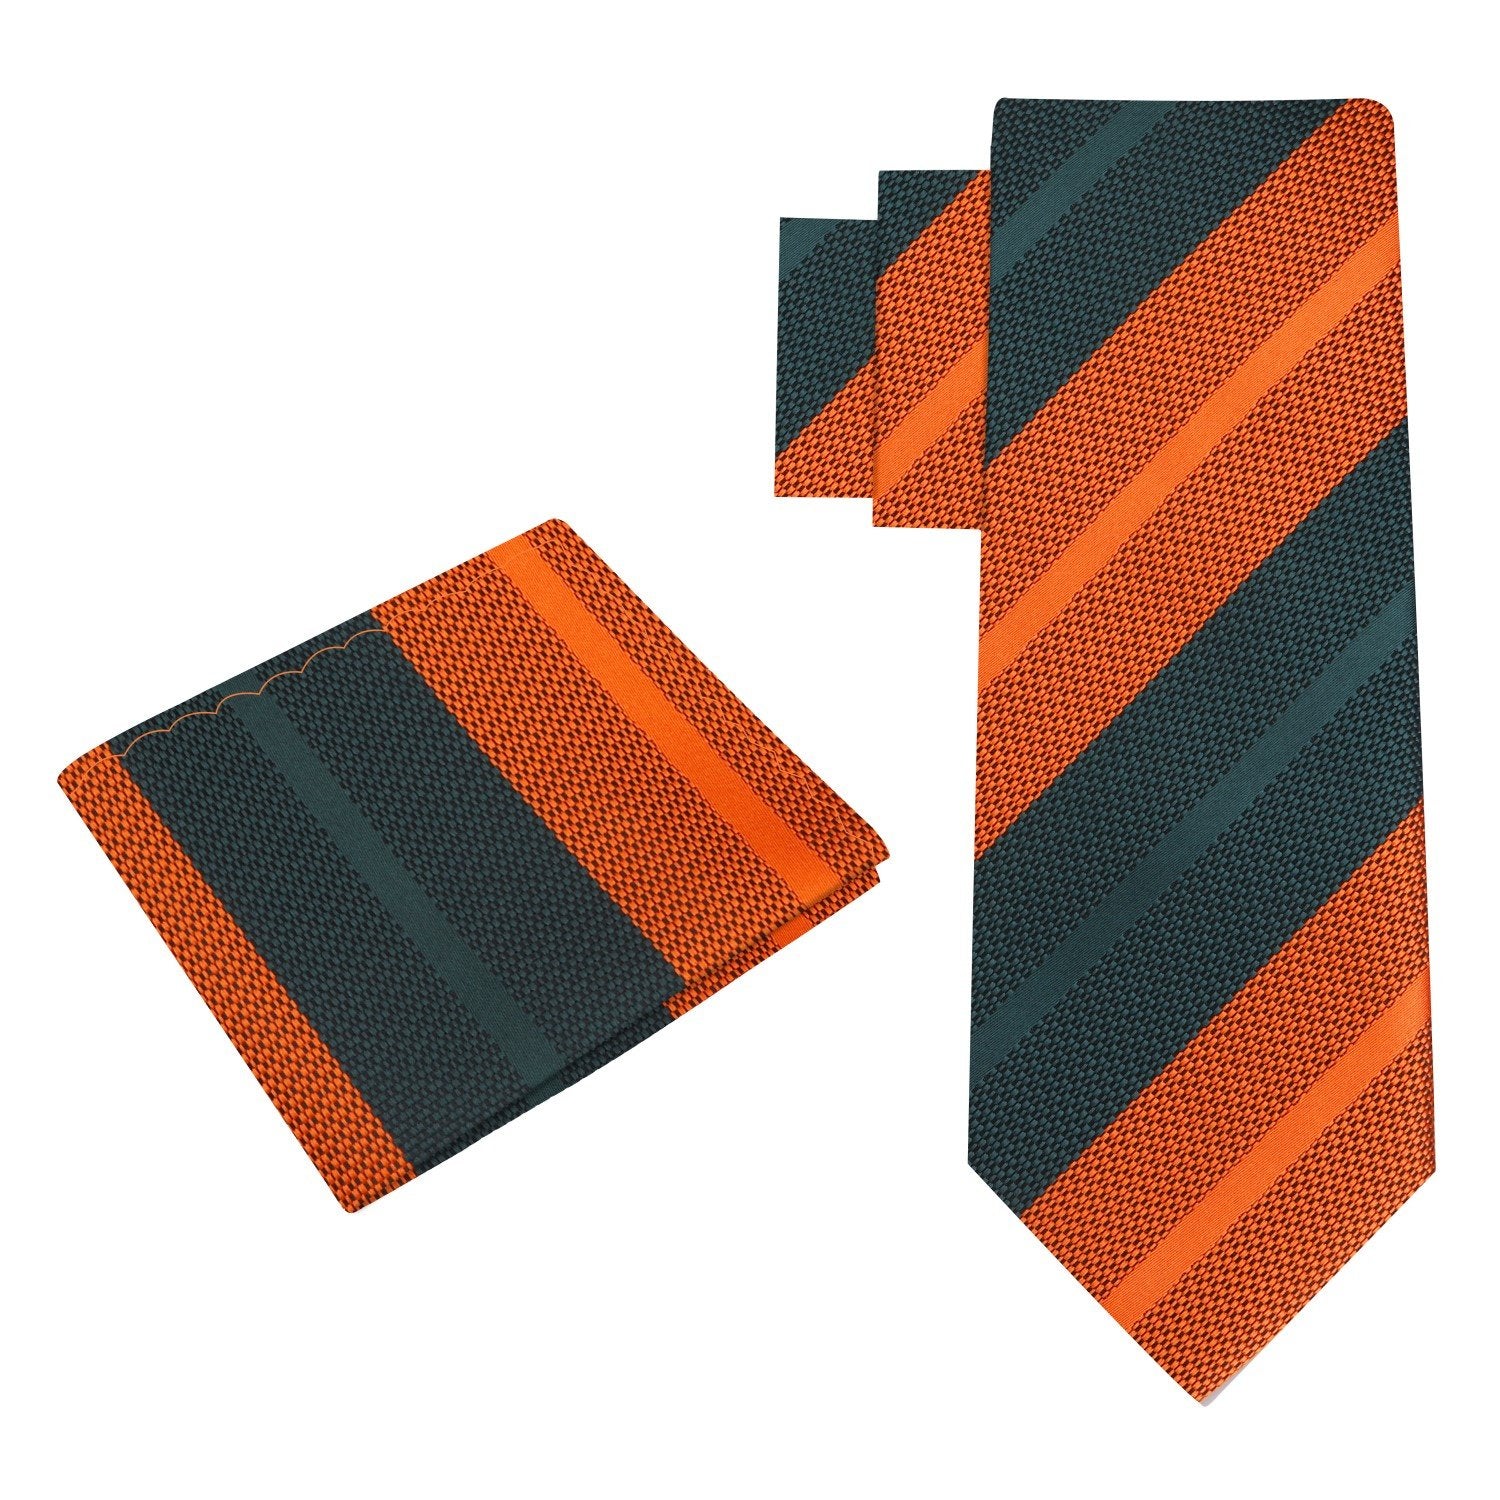 Alt view: Orange, Green Stripe Tie and Square